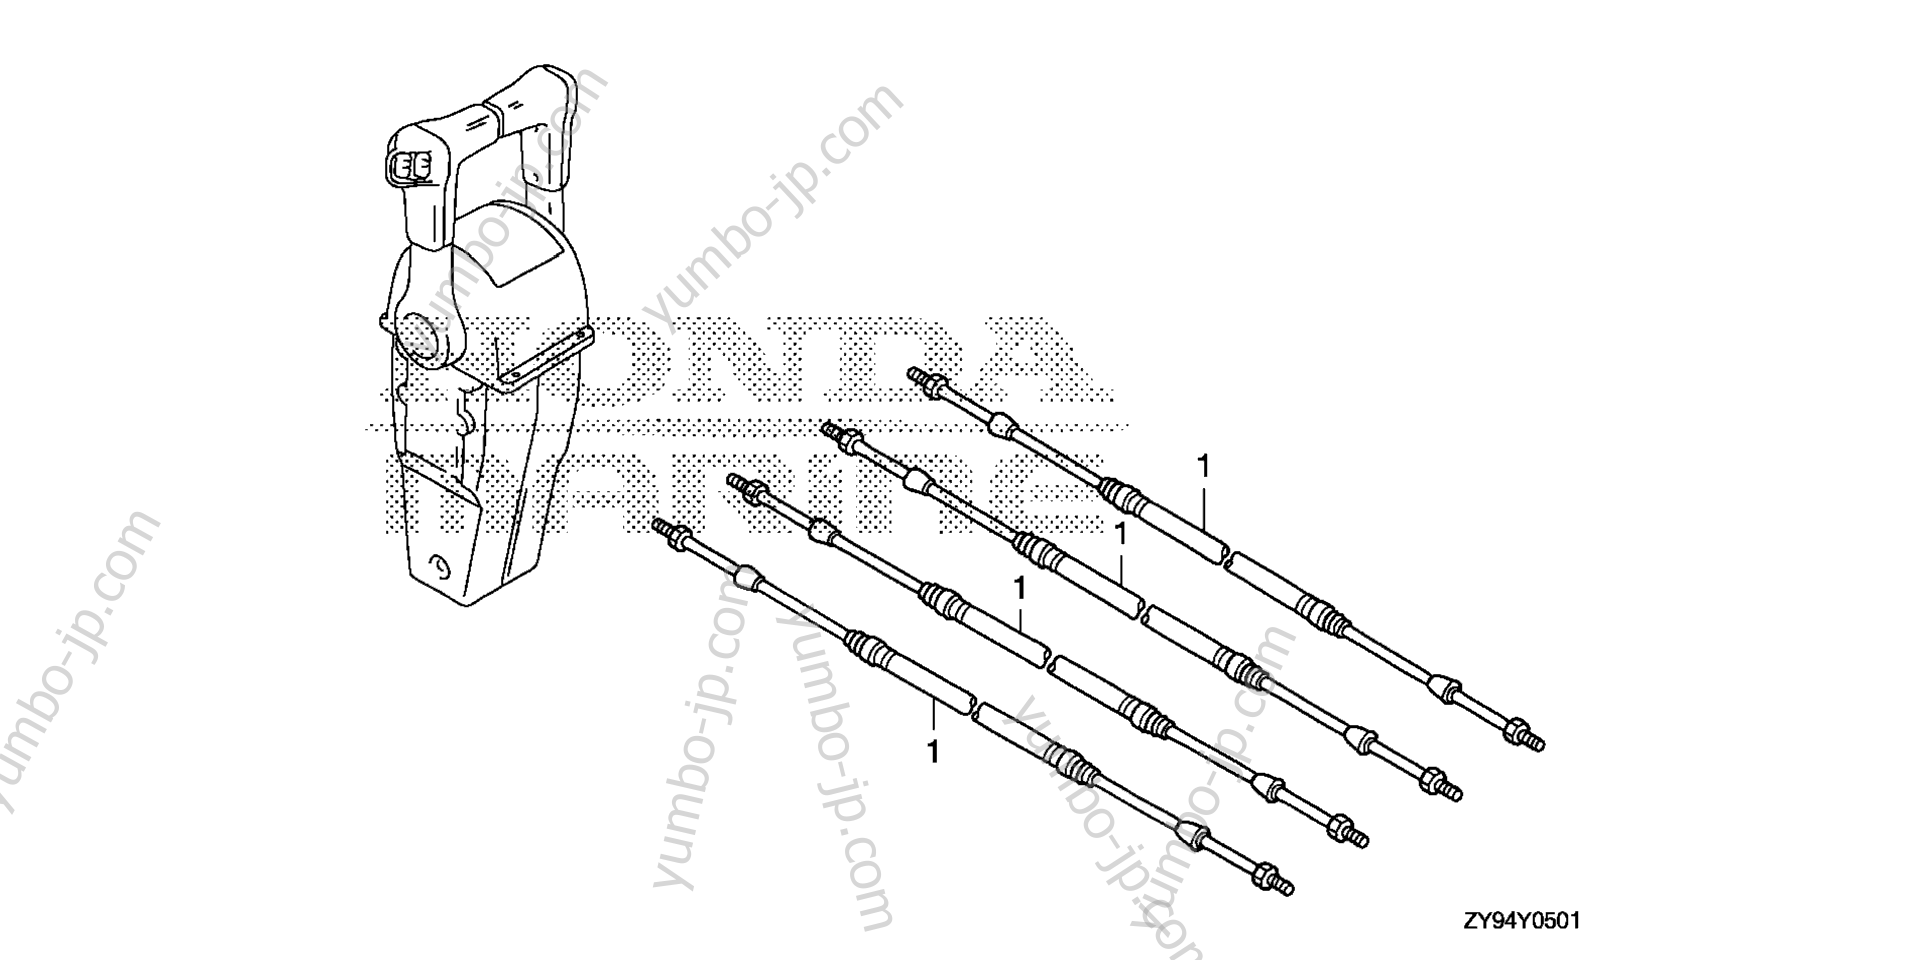 CABLE (DUAL) for Marine Diesel HONDA BF75DK0 LRTA 